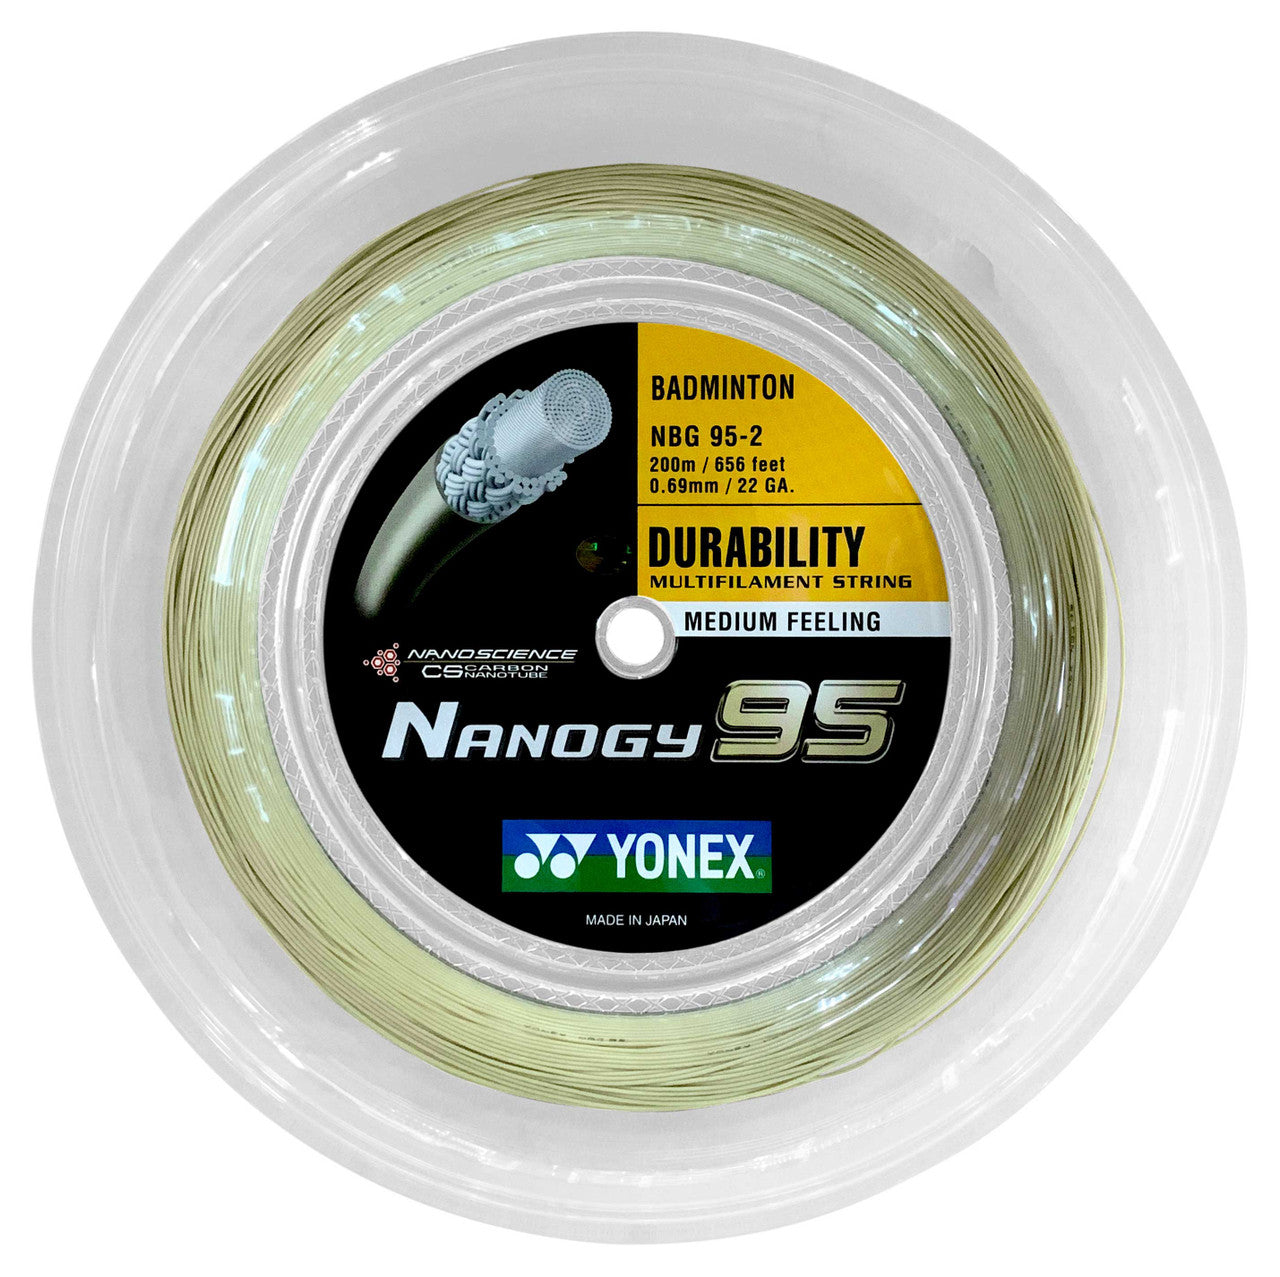 YONEX Badminton String NANOGY 95 200M Reel – Max Sports